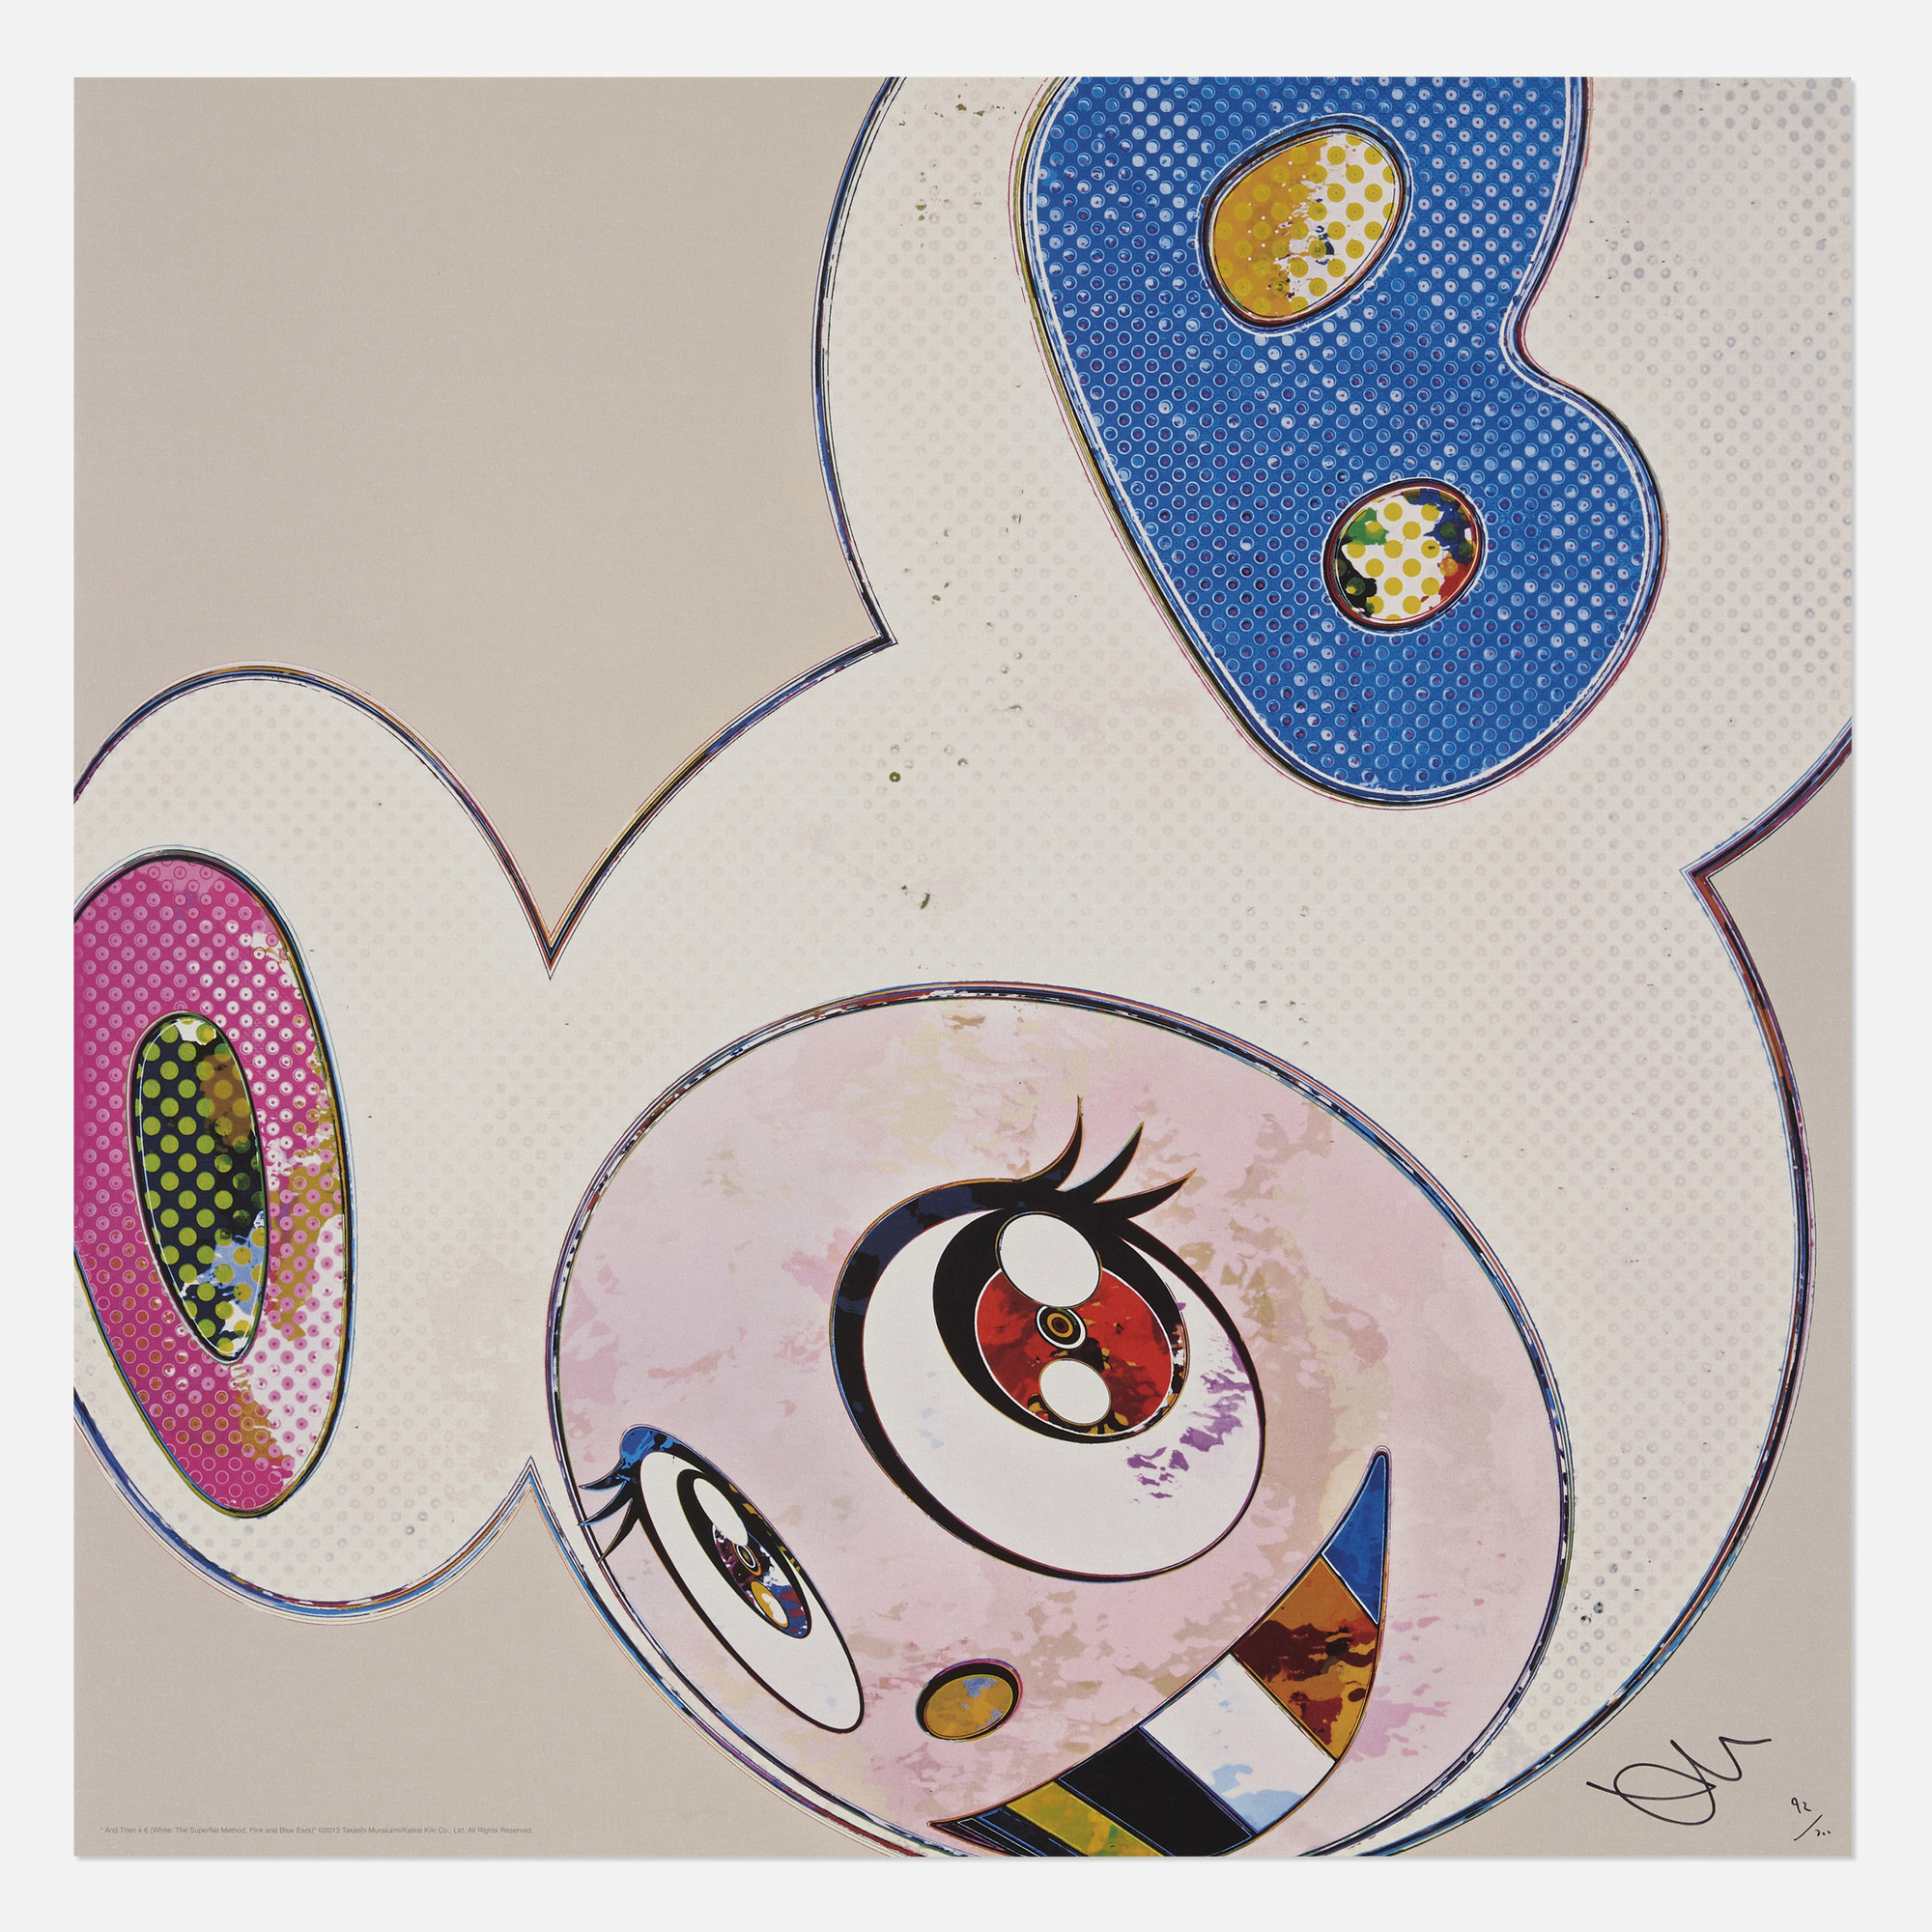 Takashi Murakami: Superflat Monogram, 2003